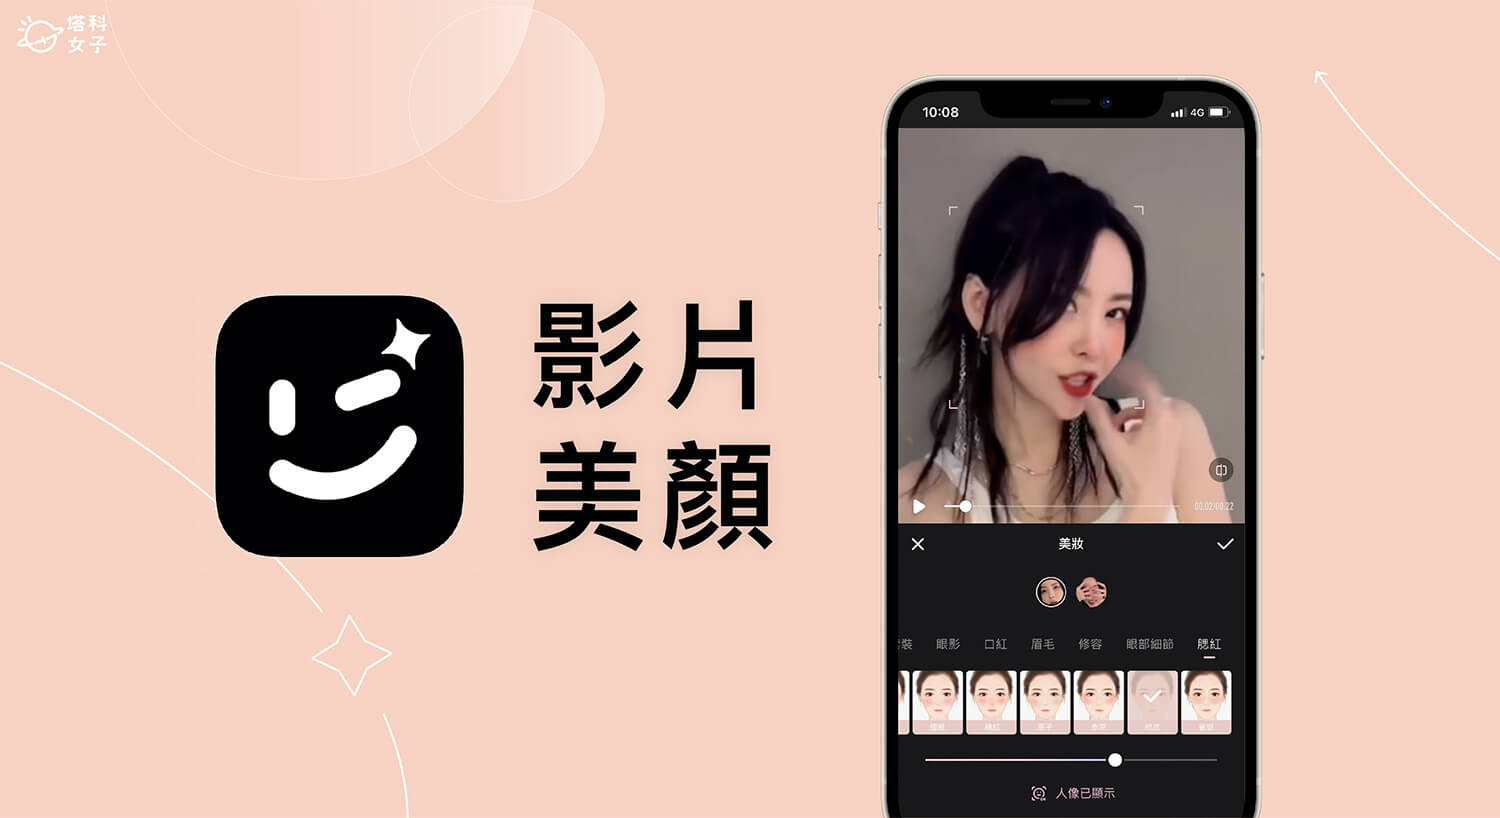 影片美顏 App《Wink》為影片人臉美肌、精修妝容、調整身材